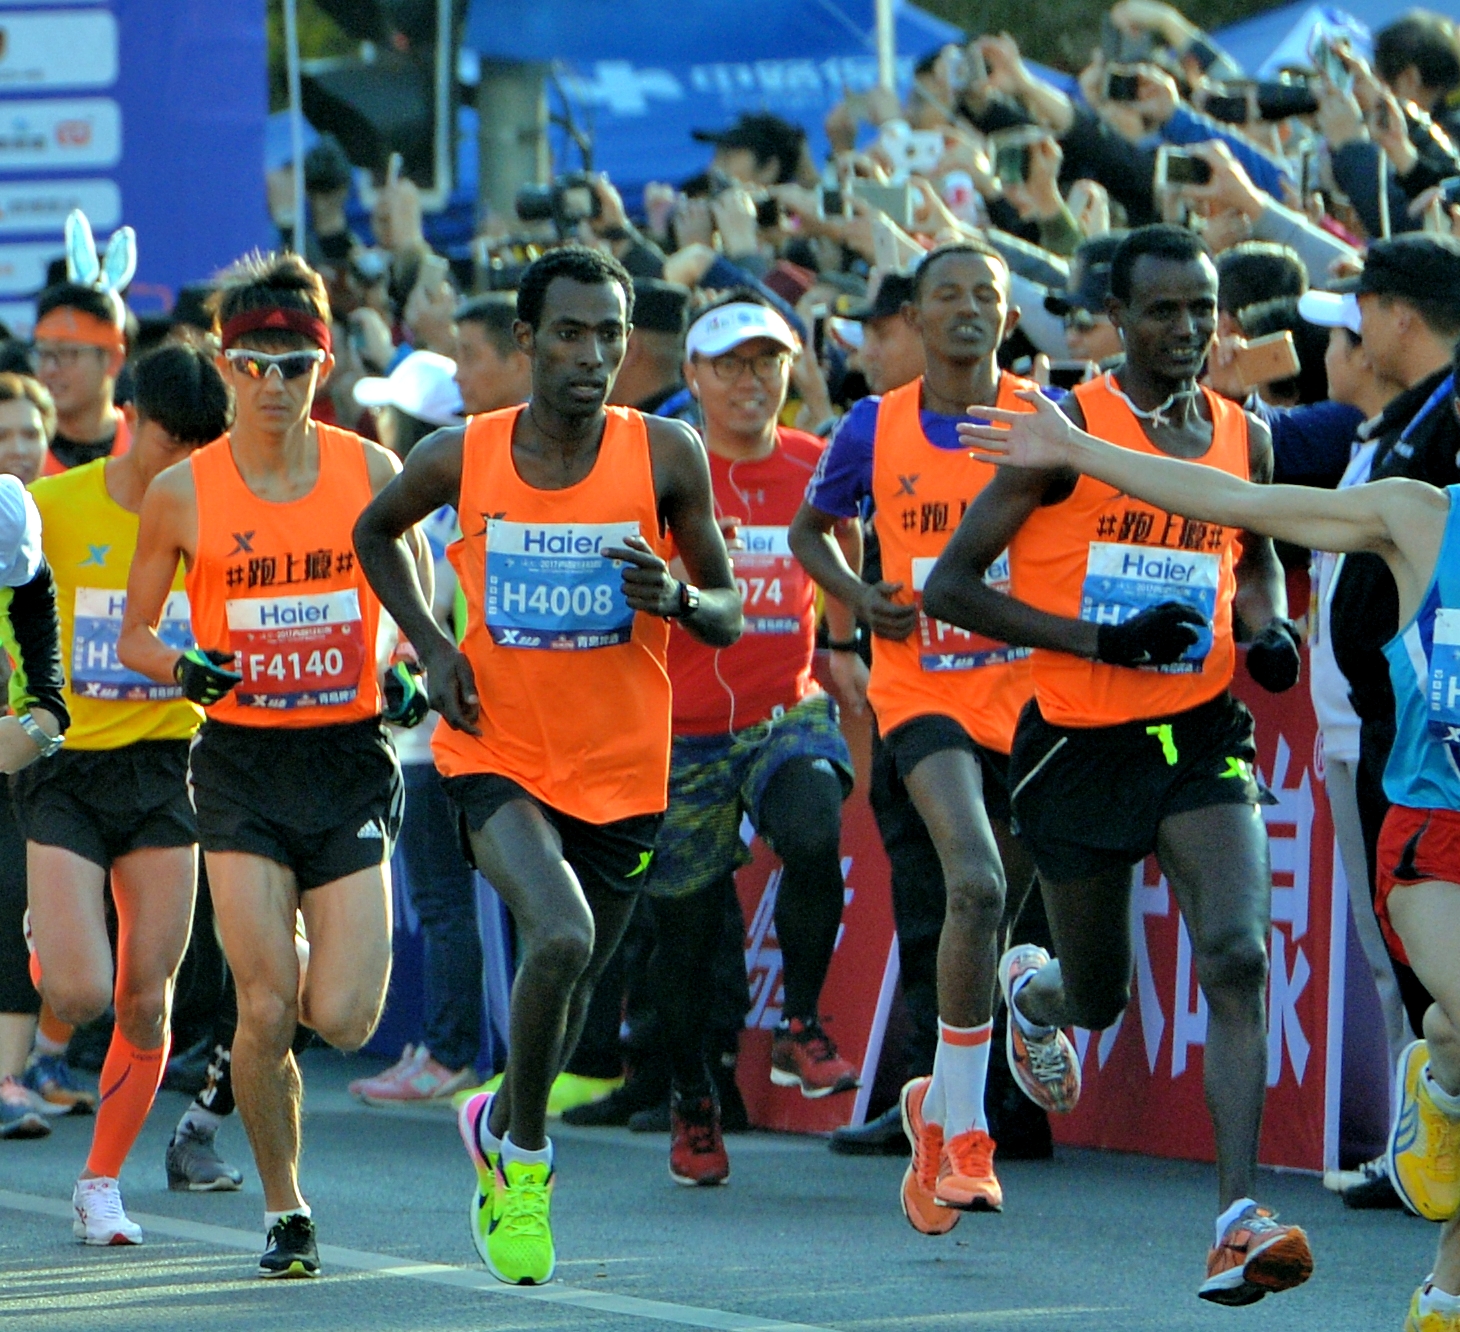 海尔•2017青岛马拉松吸引了来自20多个国家和地区的近两万名选手参加。周光辉